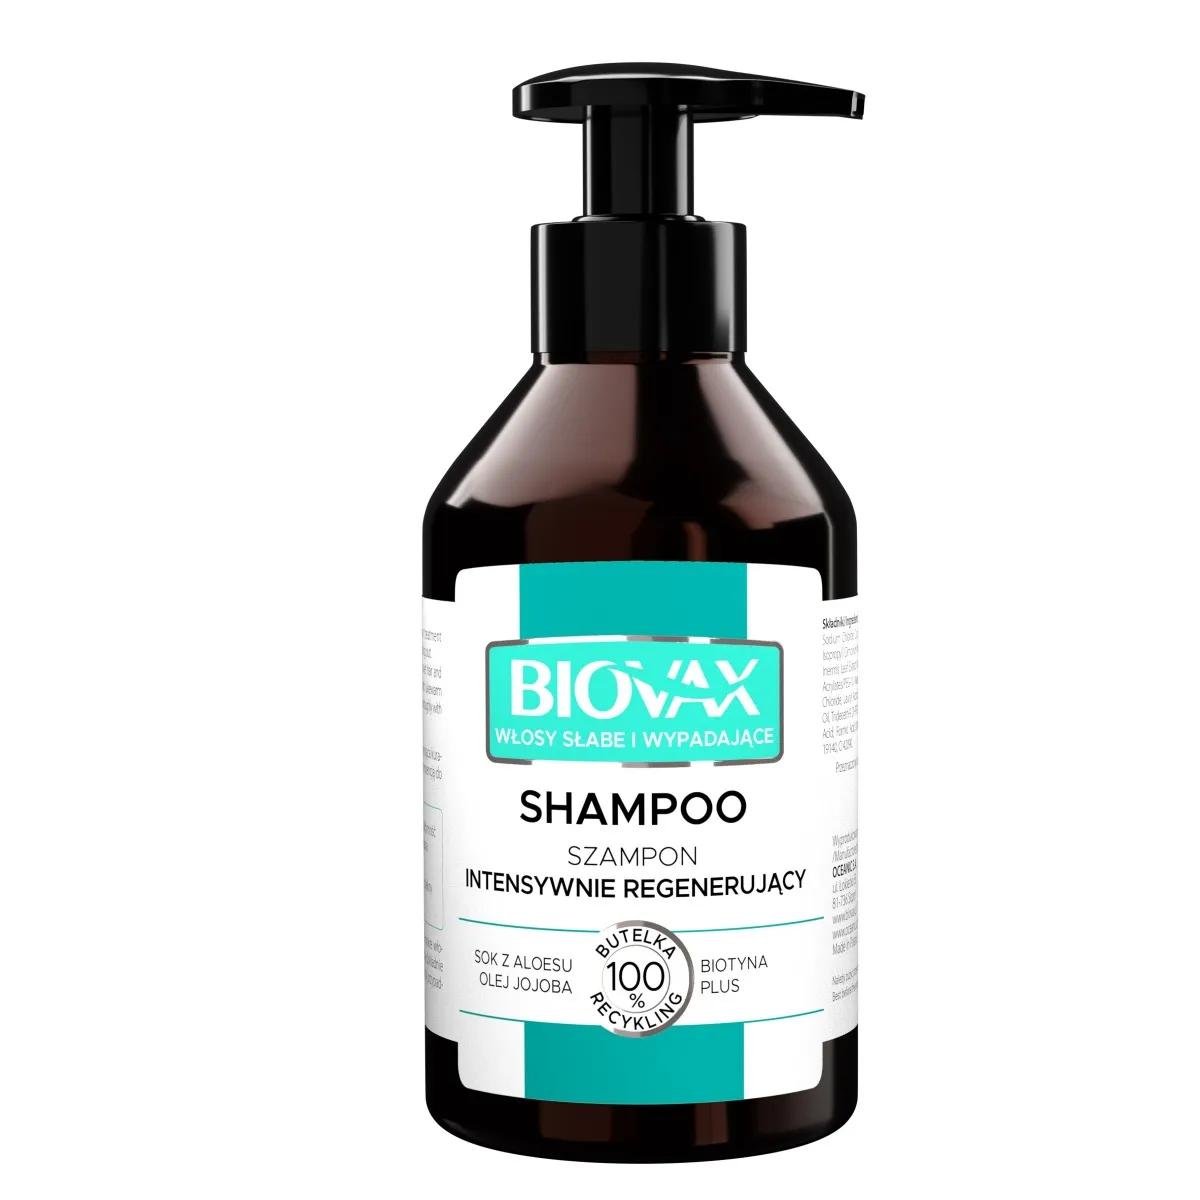 L'biotica, Biovax, Intensywnie regenerujący szampon, do włosów słabych ze skłonnością do wypadania, 200 ml